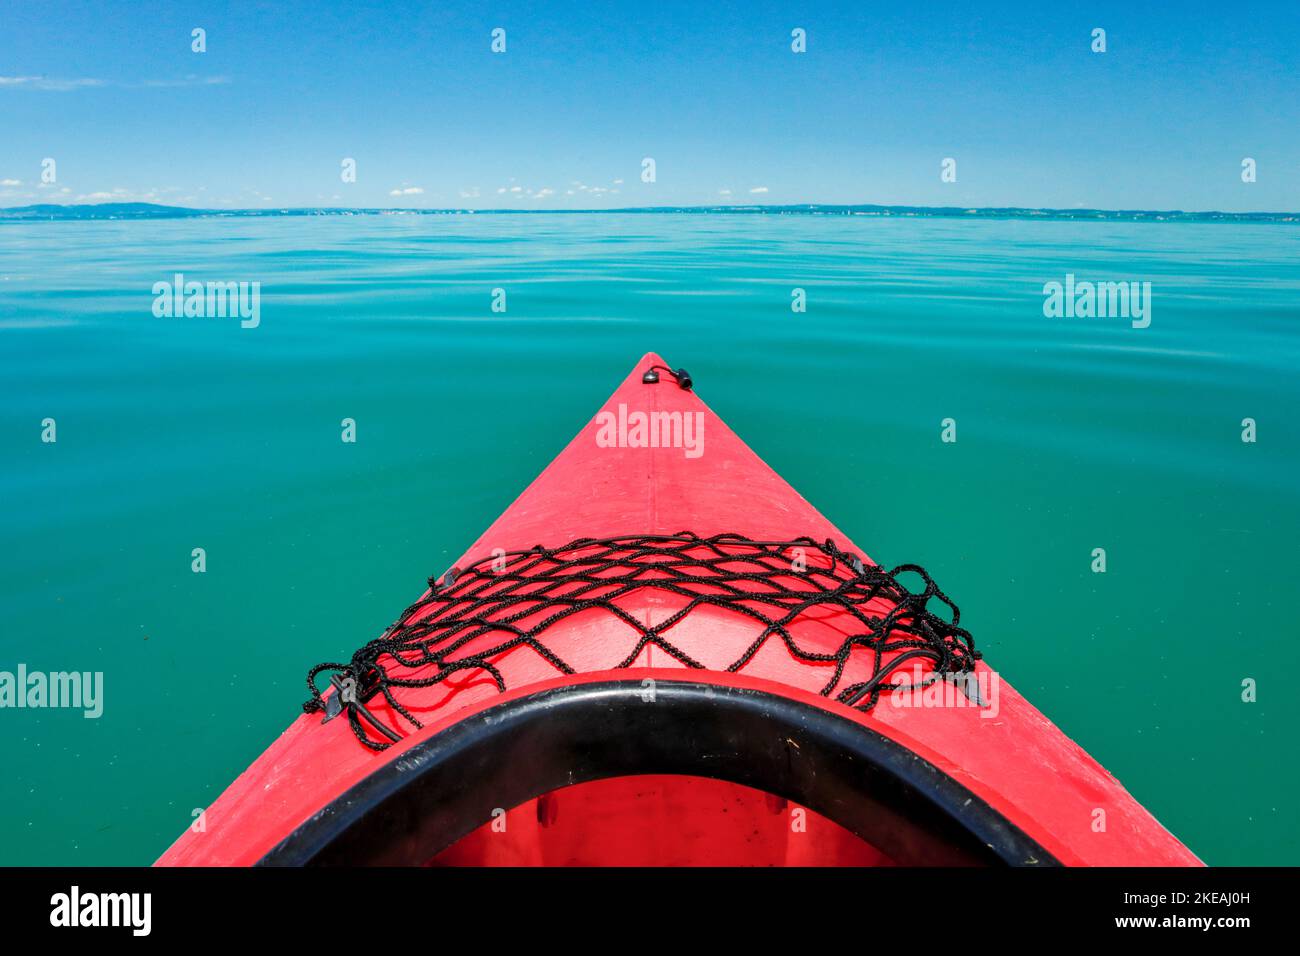 Inchino di un kayak rosso con vista sulle acque turchesi del Lago di Costanza, Svizzera Foto Stock